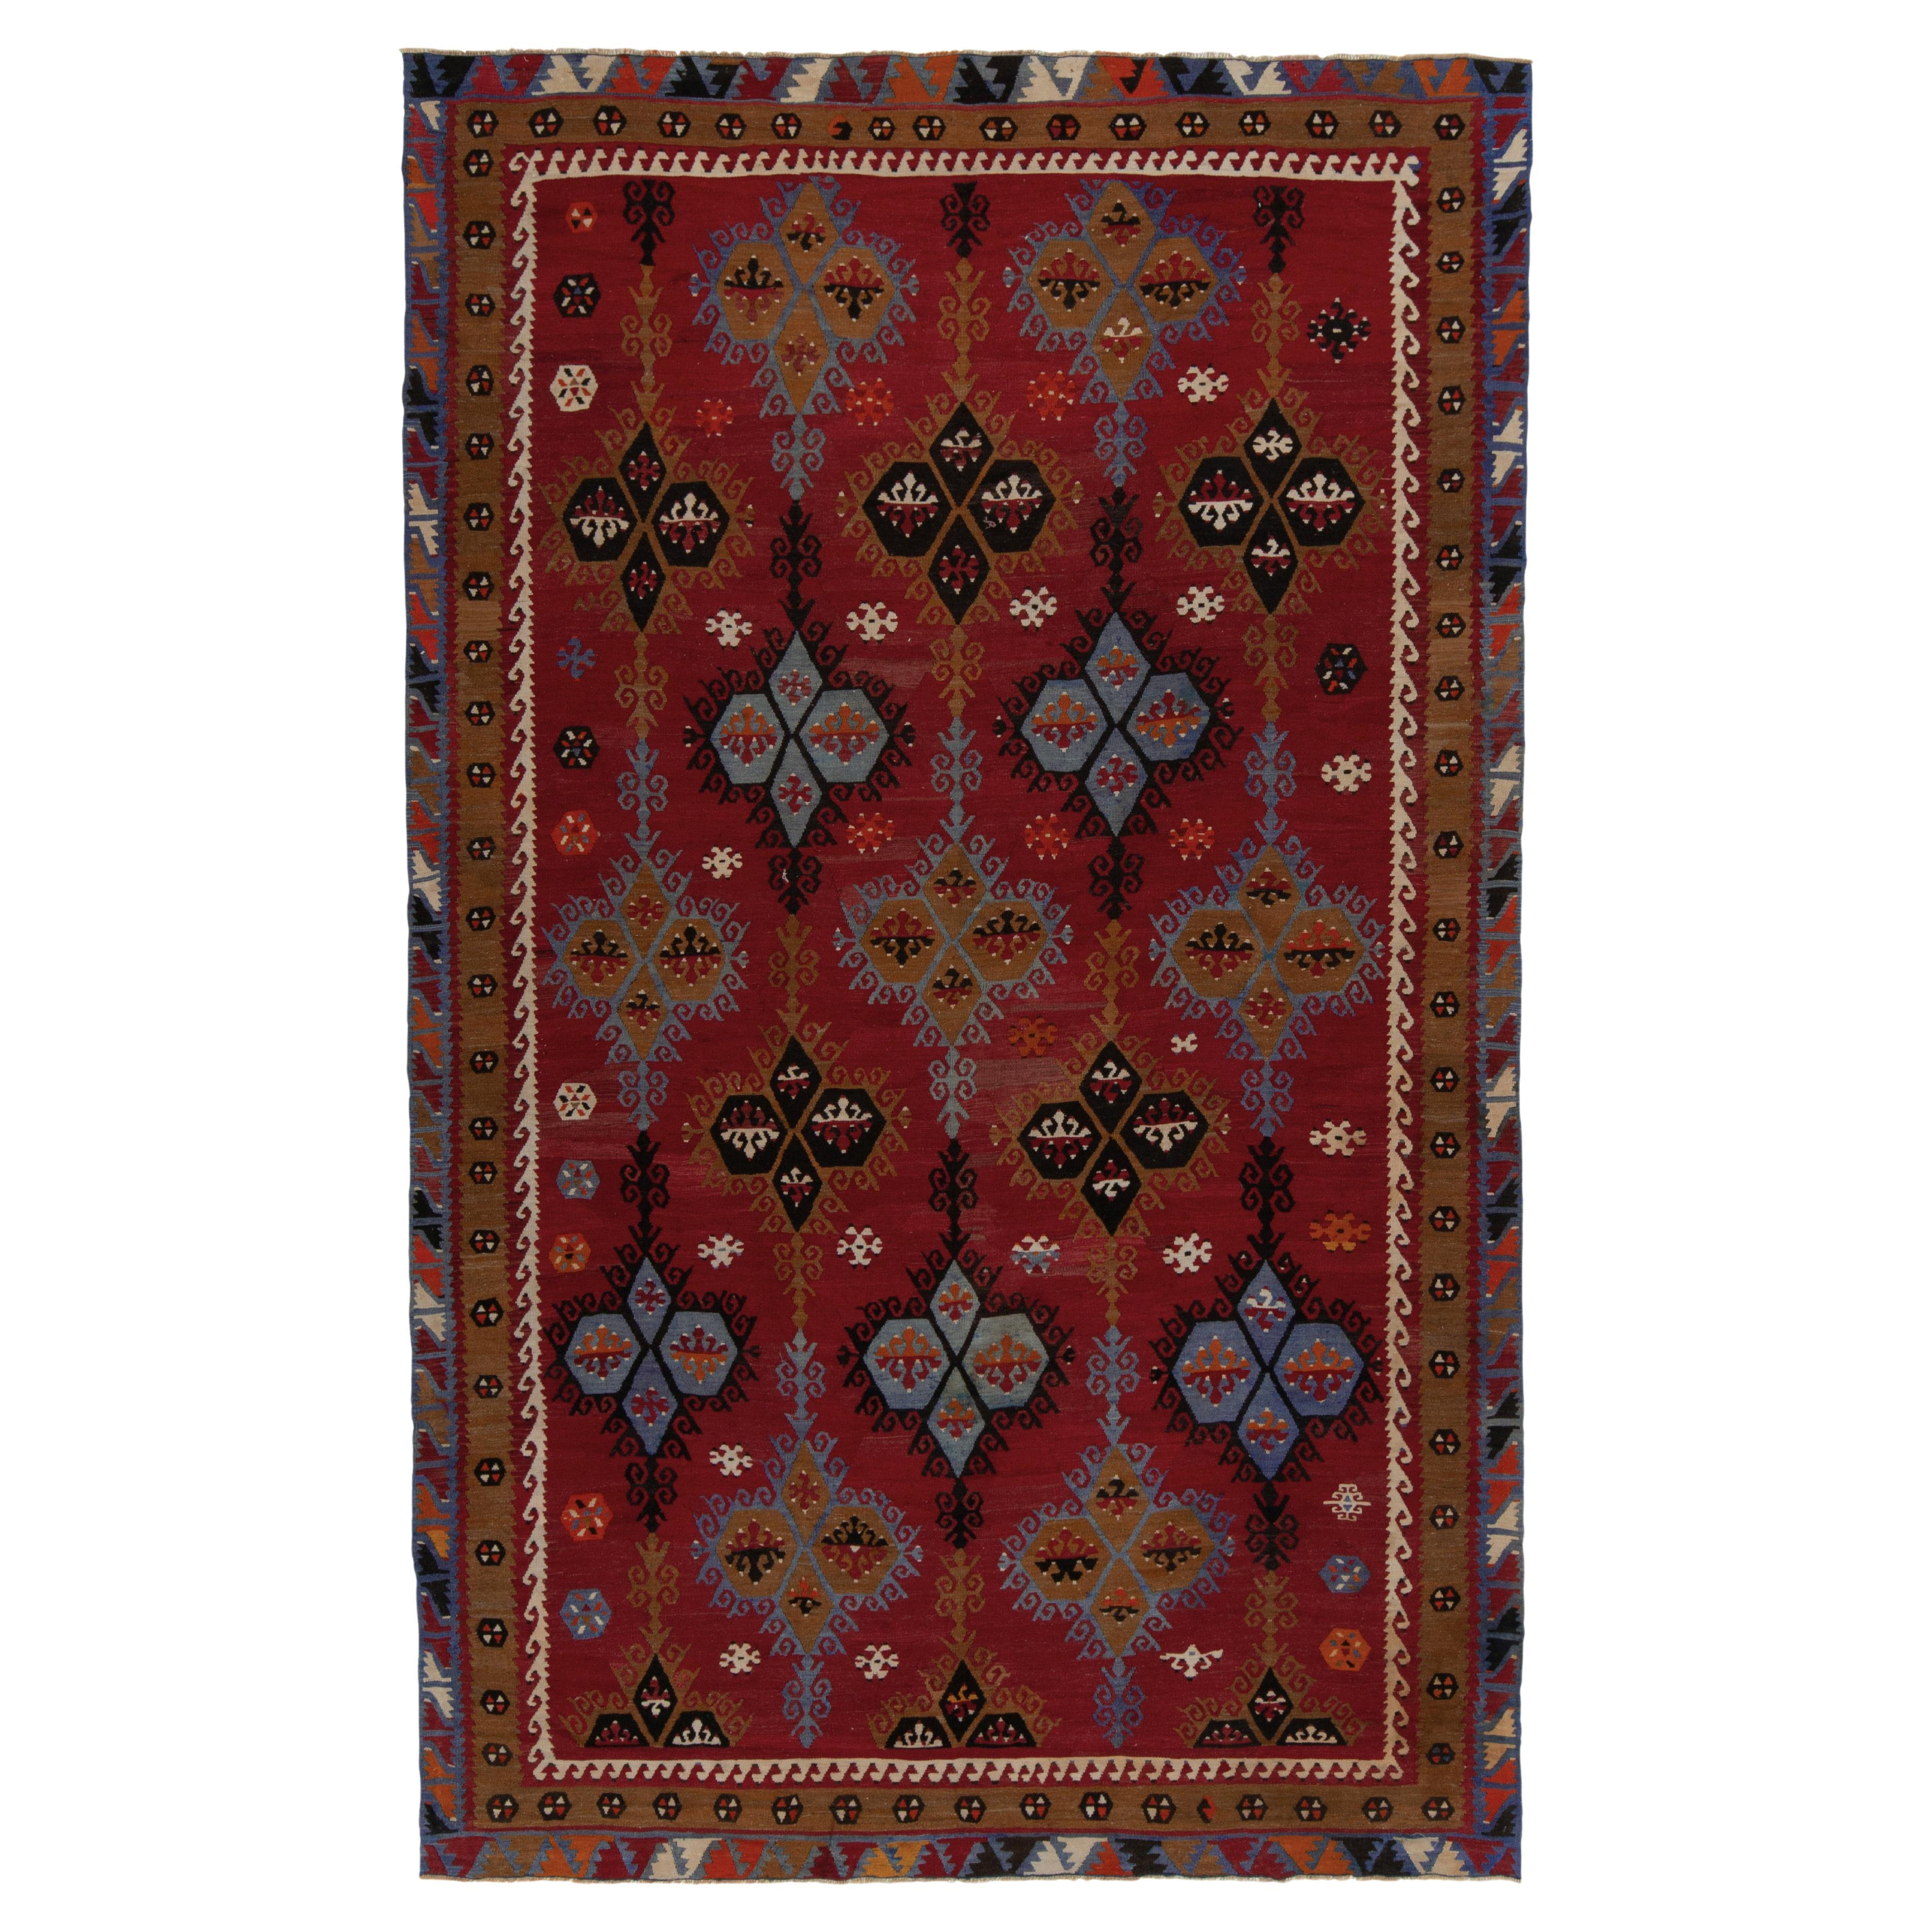 Handgewebter Vintage-Stammes-Kelim in Rot, Blau mit geometrischem Muster von Teppich & Kelim